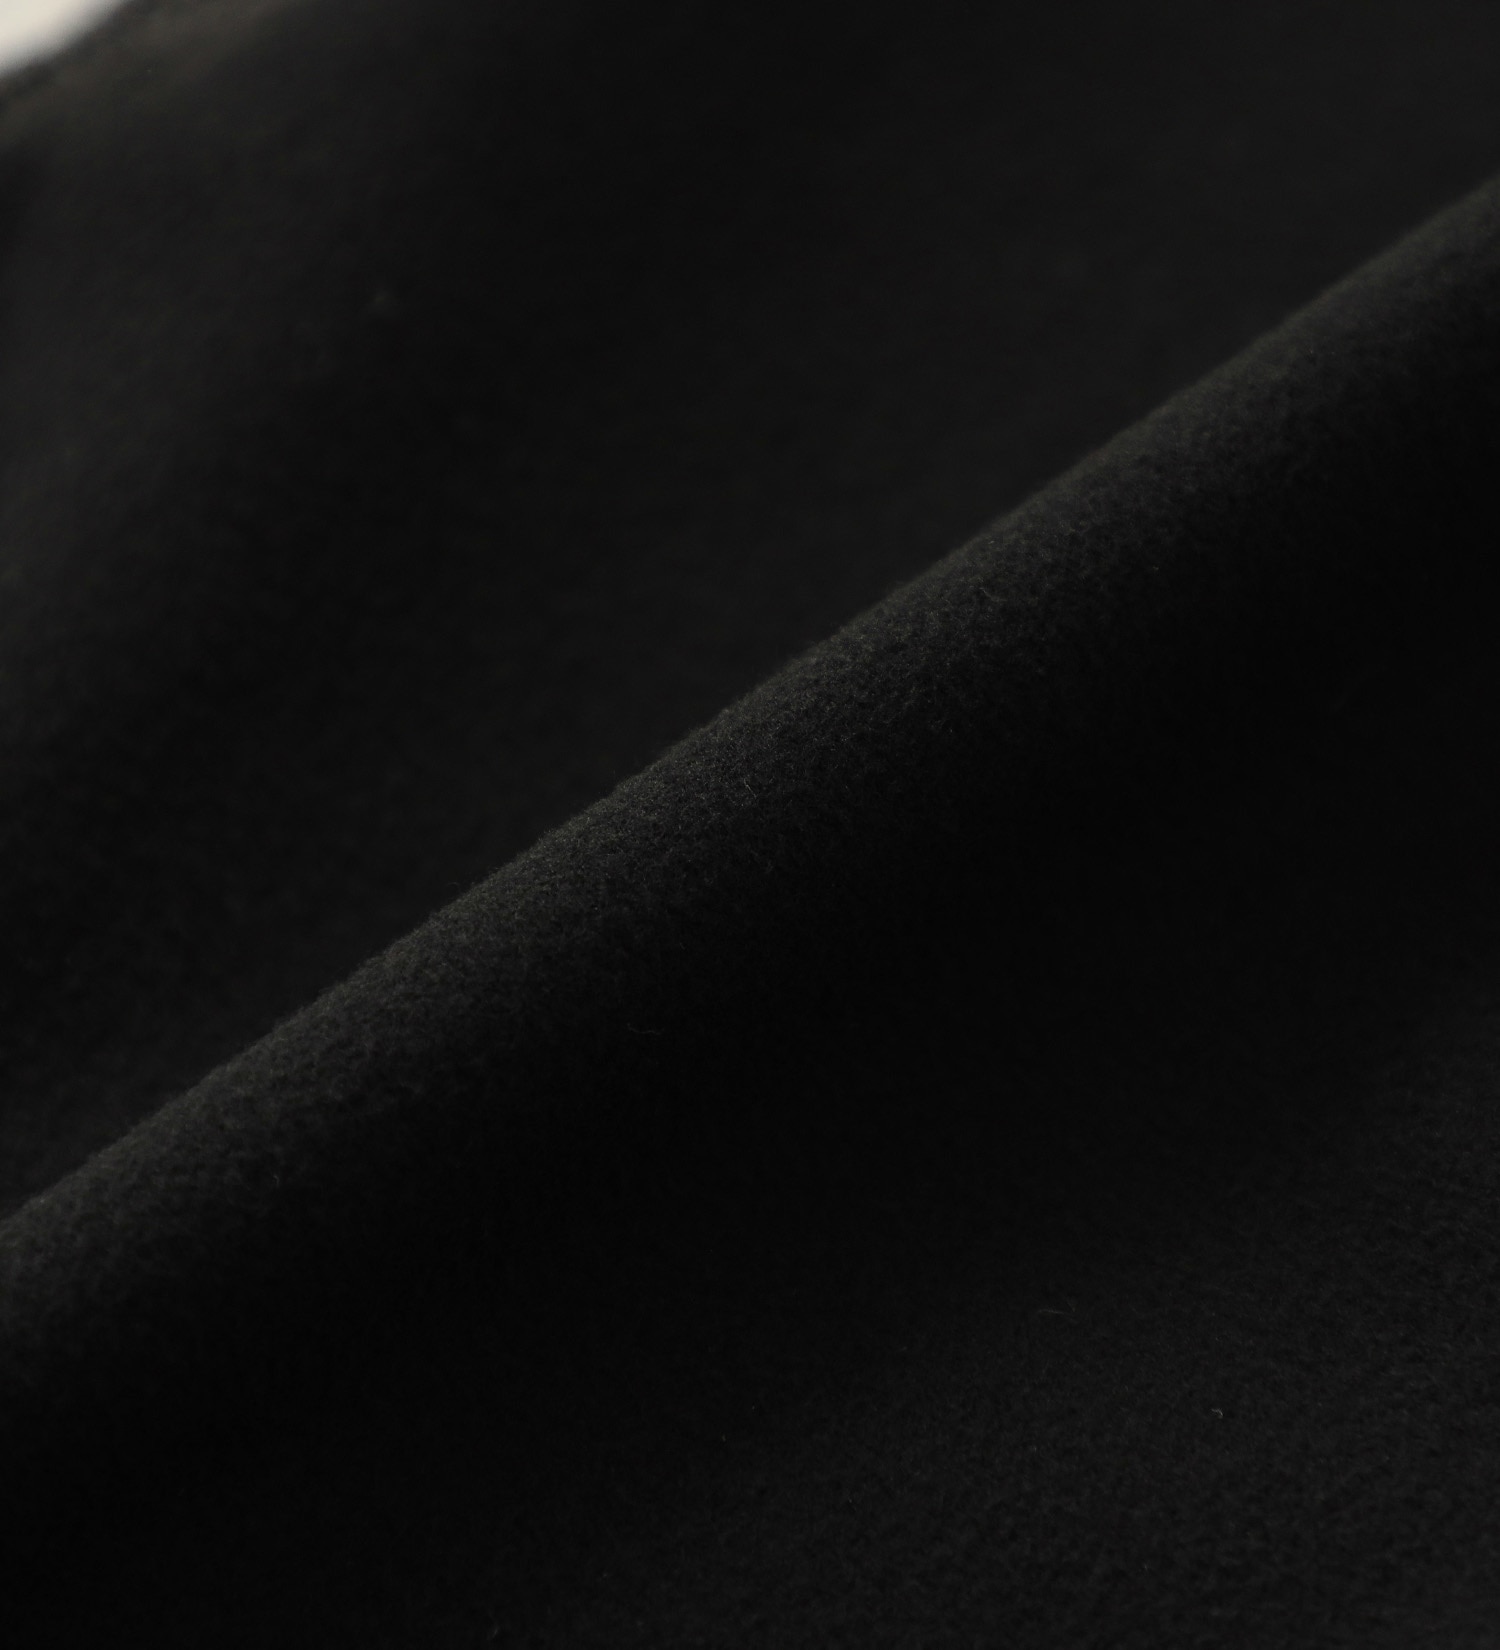 EDWIN(エドウイン)の【BLACKFRIDAY】2層で暖かい EDWIN インターナショナルベーシック レギュラーストレートパンツ403 WILD FIRE 2層ボンディング構造 【暖】|パンツ/パンツ/メンズ|チャコールグレー